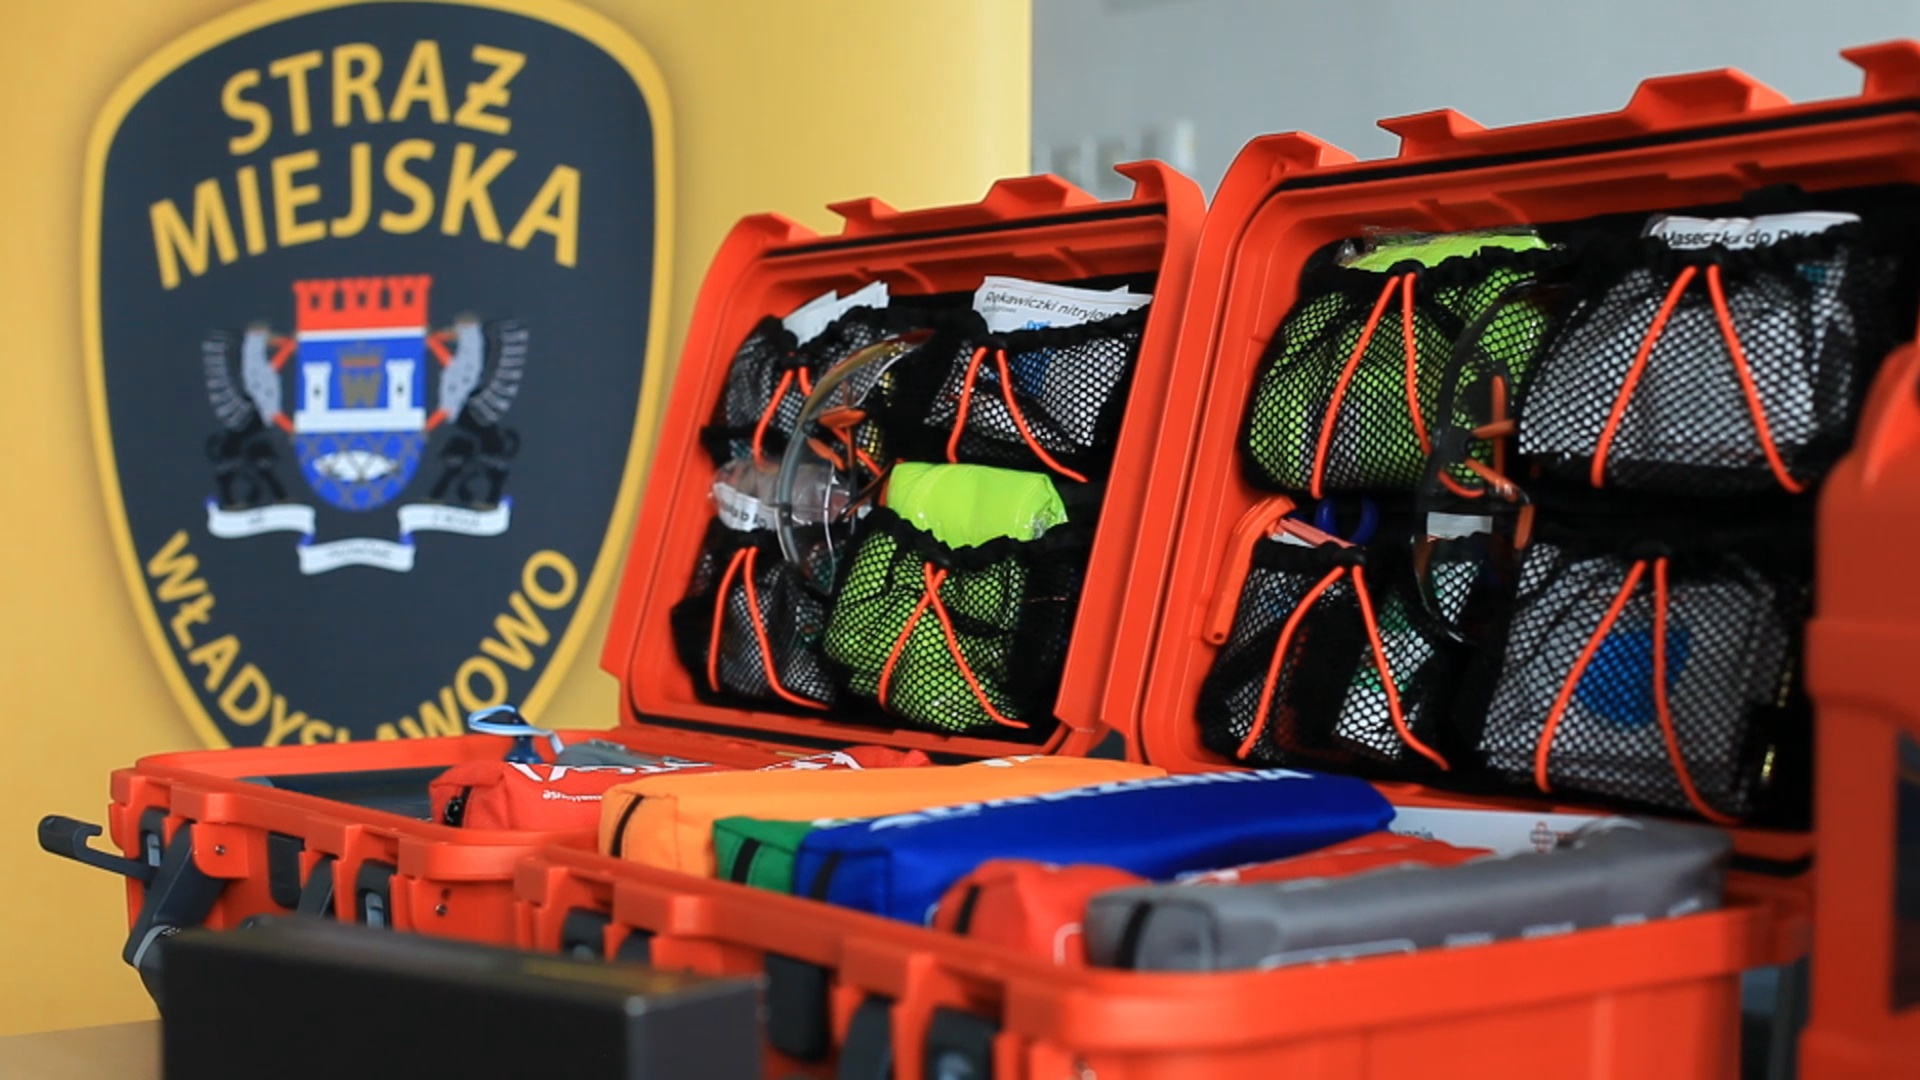 Straż Miejska we Władysławowie wzbogaciła się o dwie nowe mobilne apteczki z systemem Trauma Kit